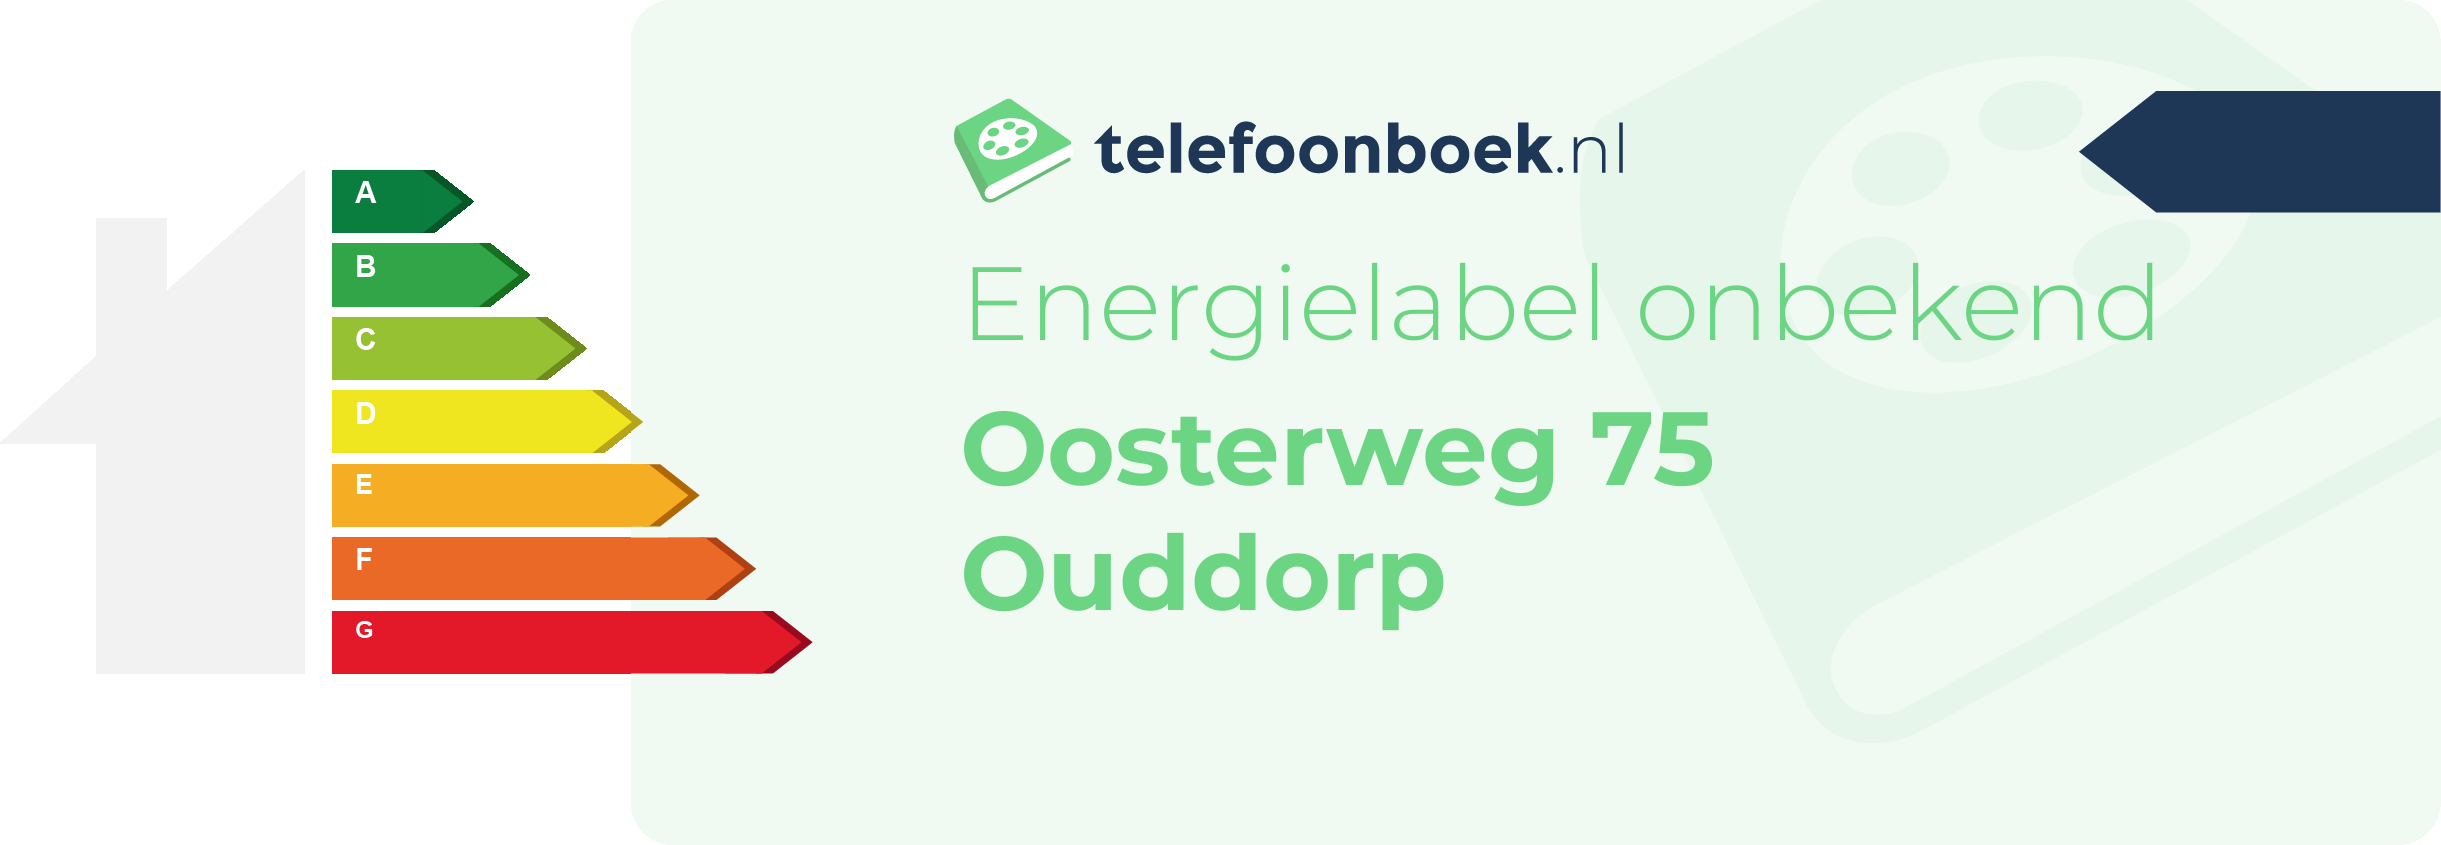 Energielabel Oosterweg 75 Ouddorp